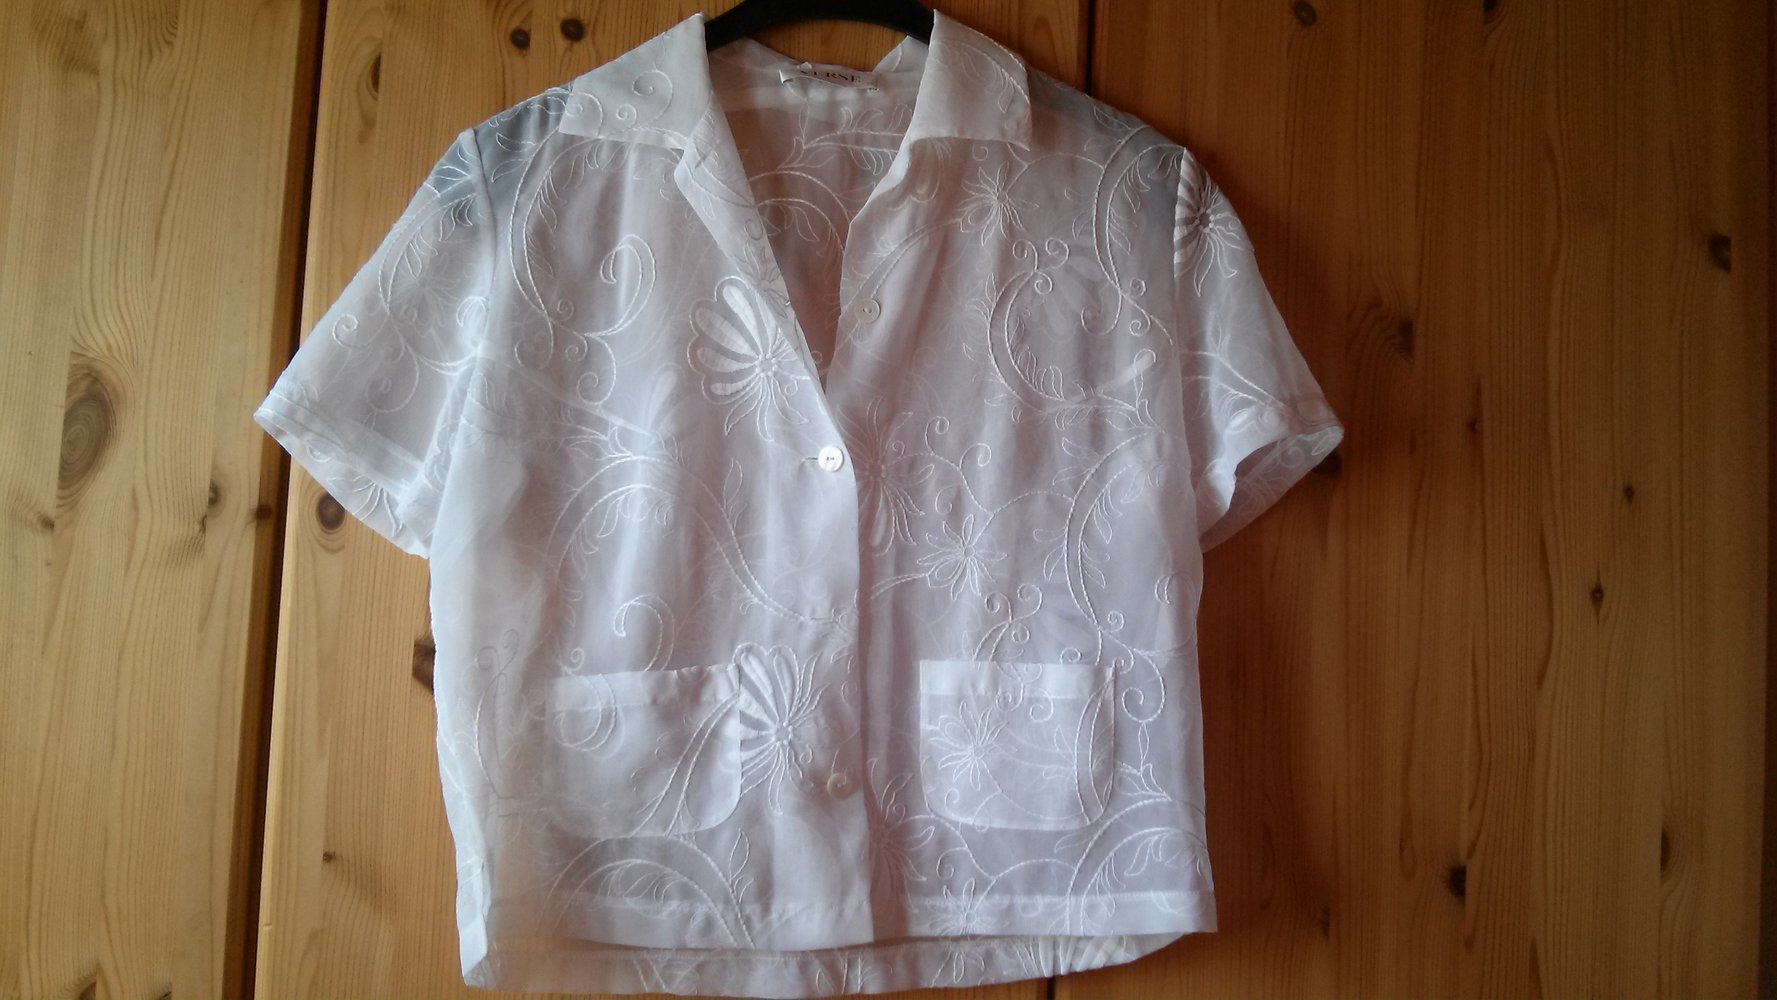 Verse - Bluse von VERSE, weiß, durchsichtig, Blumen, Muster, 38, S, Knöpfe,  transparent, kurzarm :: Kleiderkorb.de